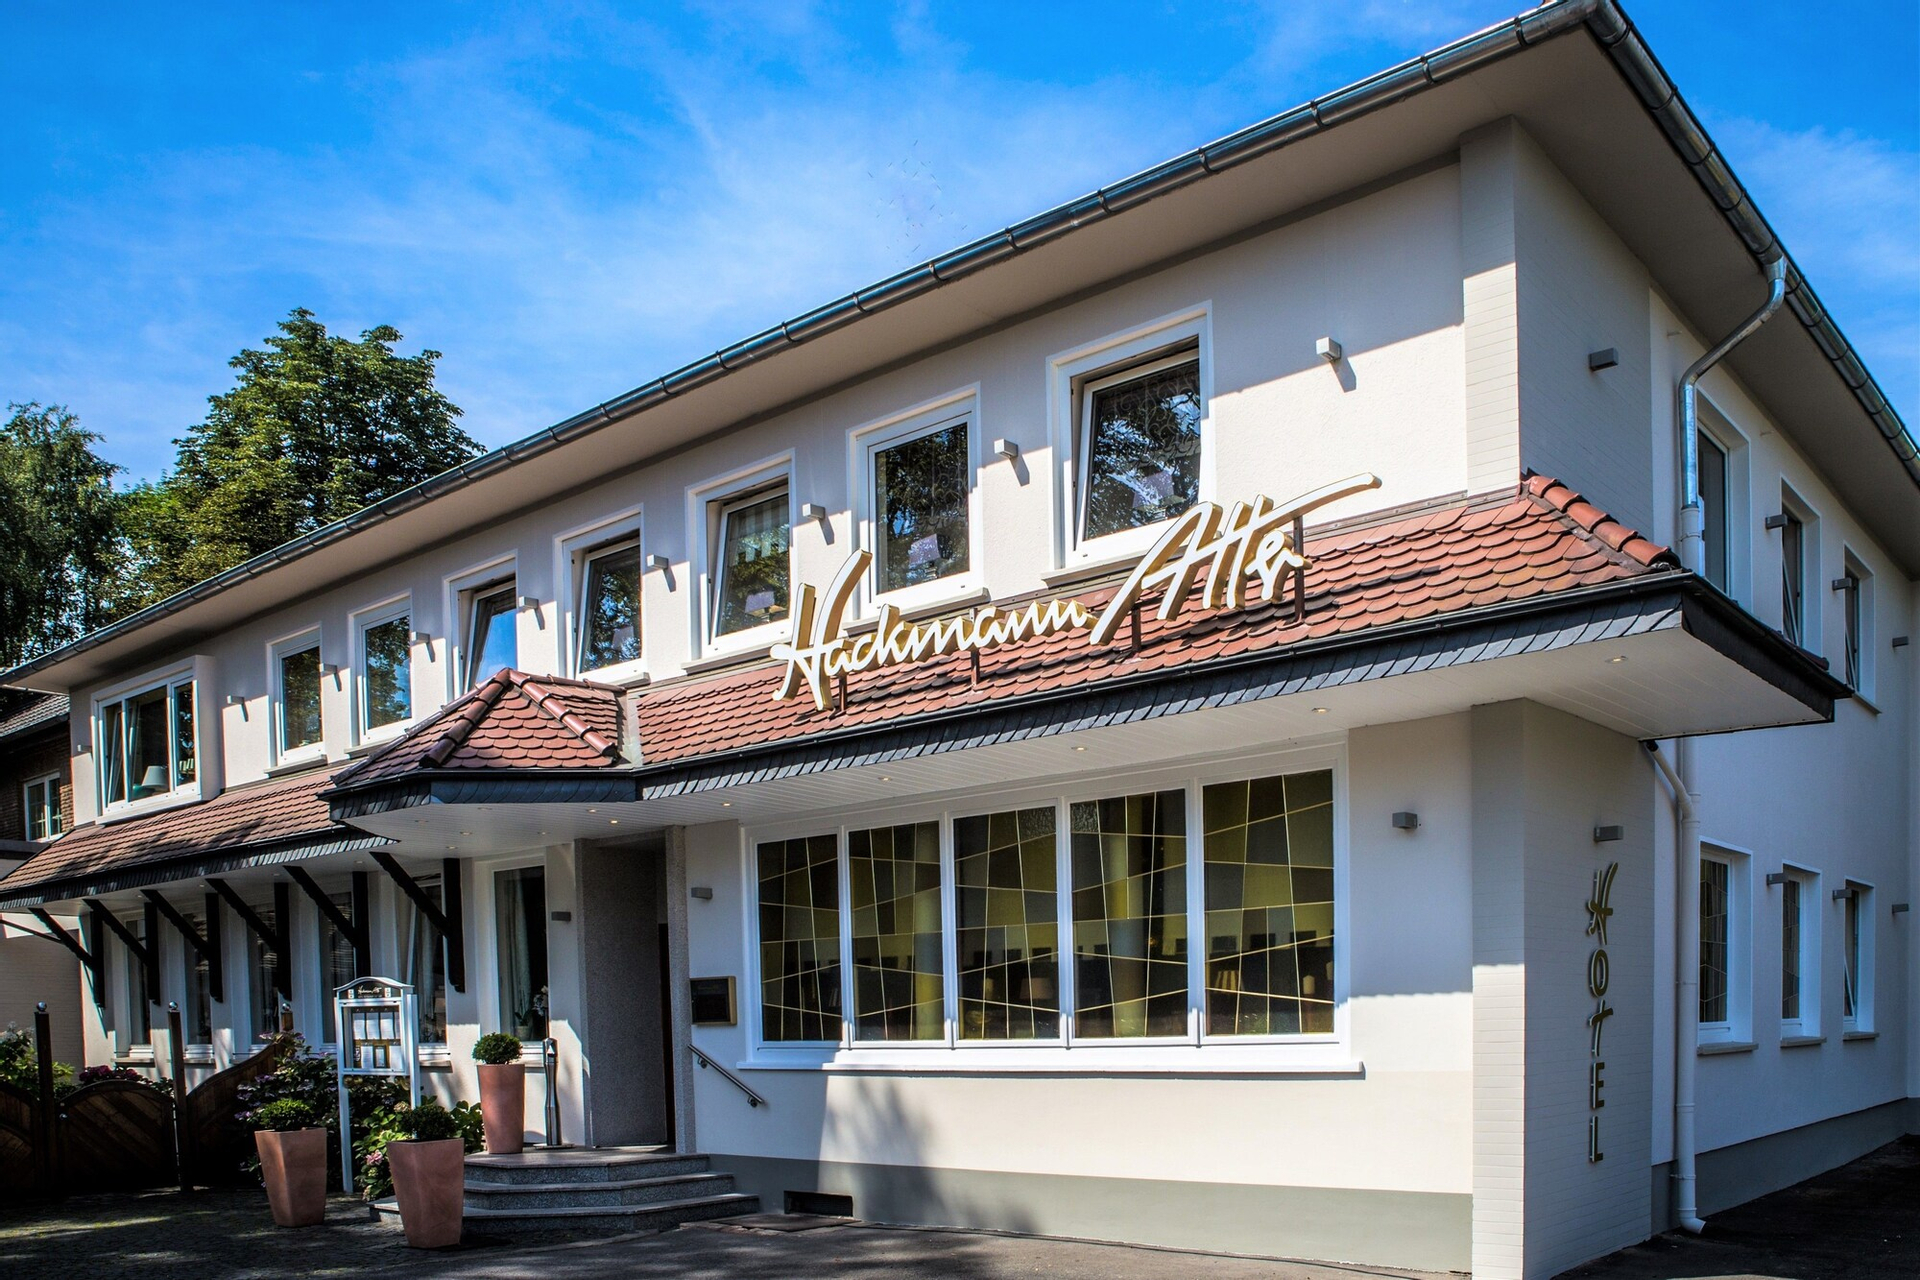 Exterior & Views 2, Hotel Restaurant Hackmann-Atter, Osnabrück